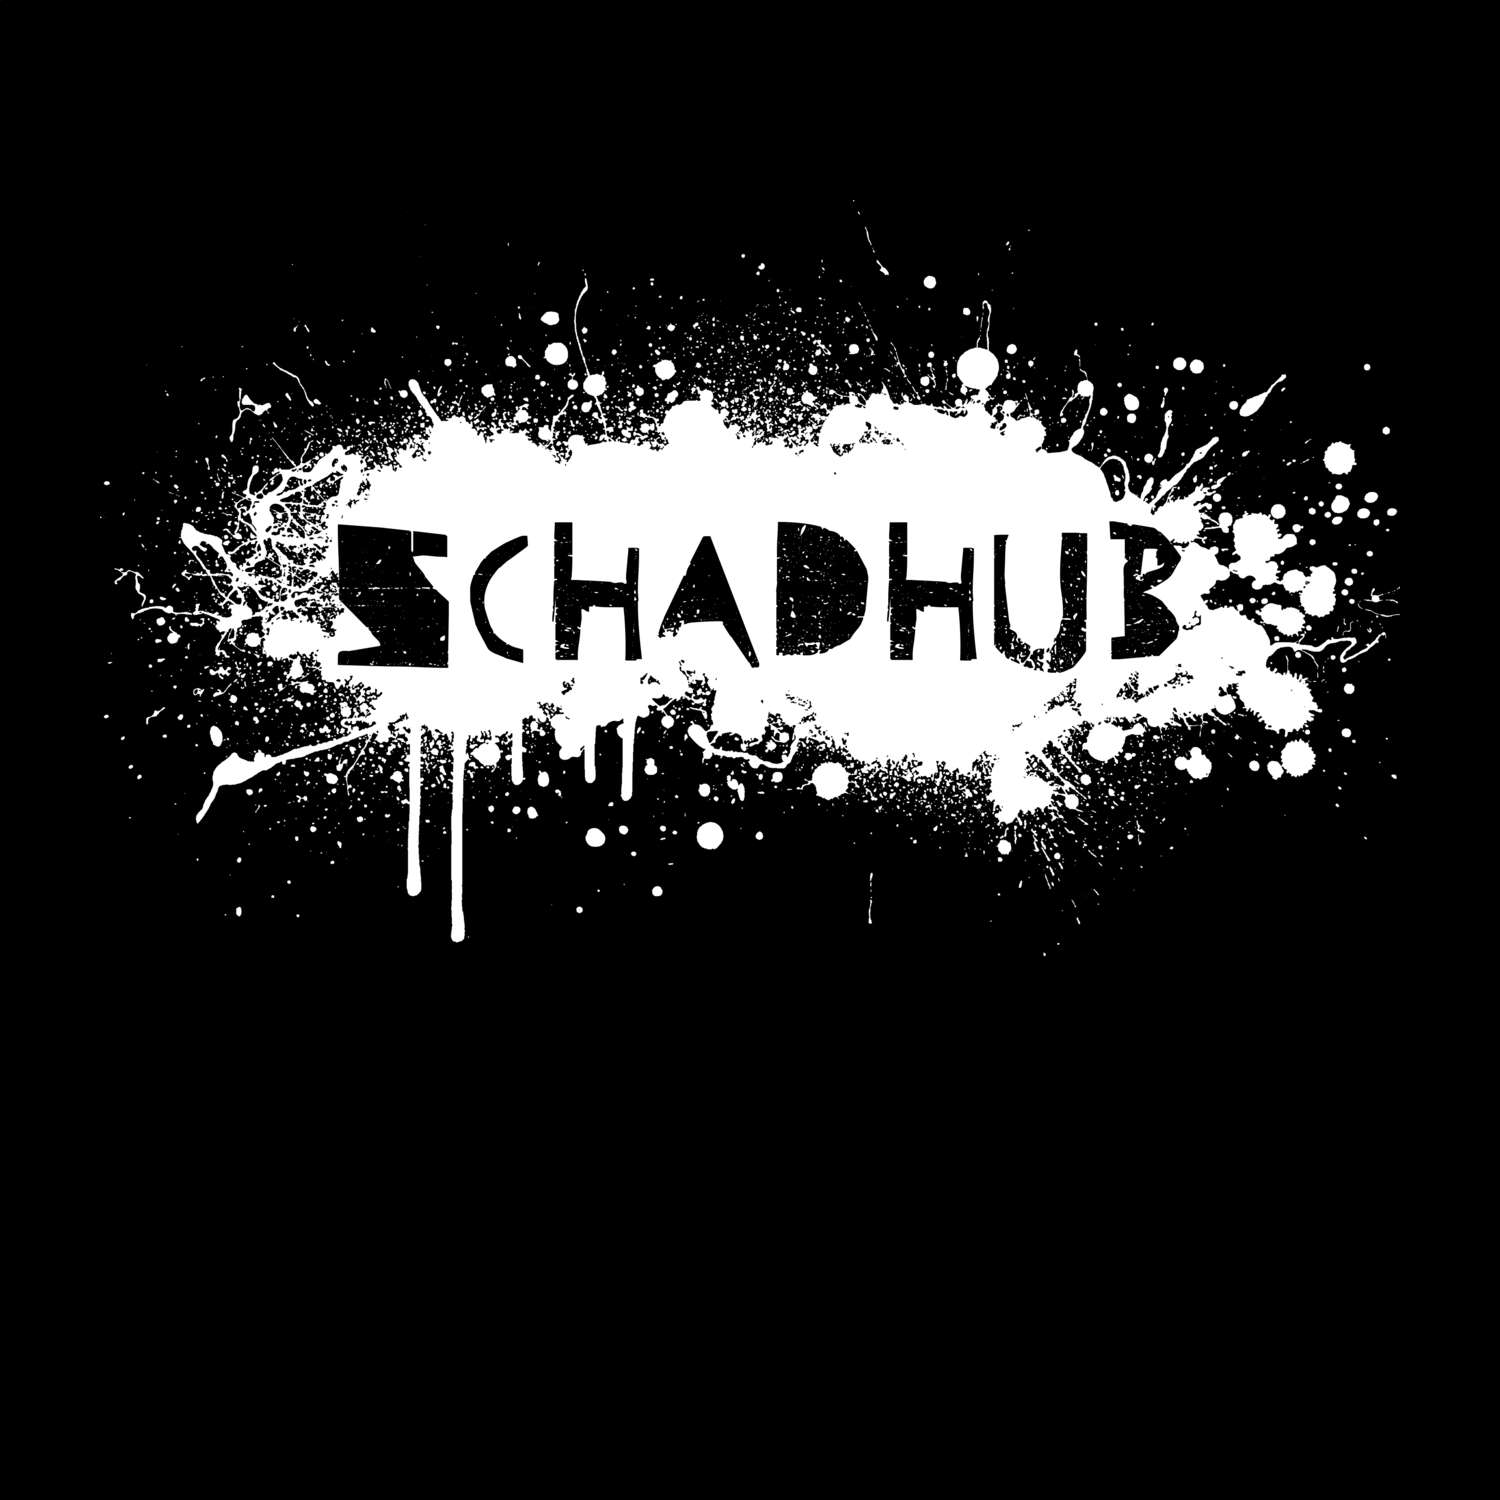 Schadhub T-Shirt »Paint Splash Punk«